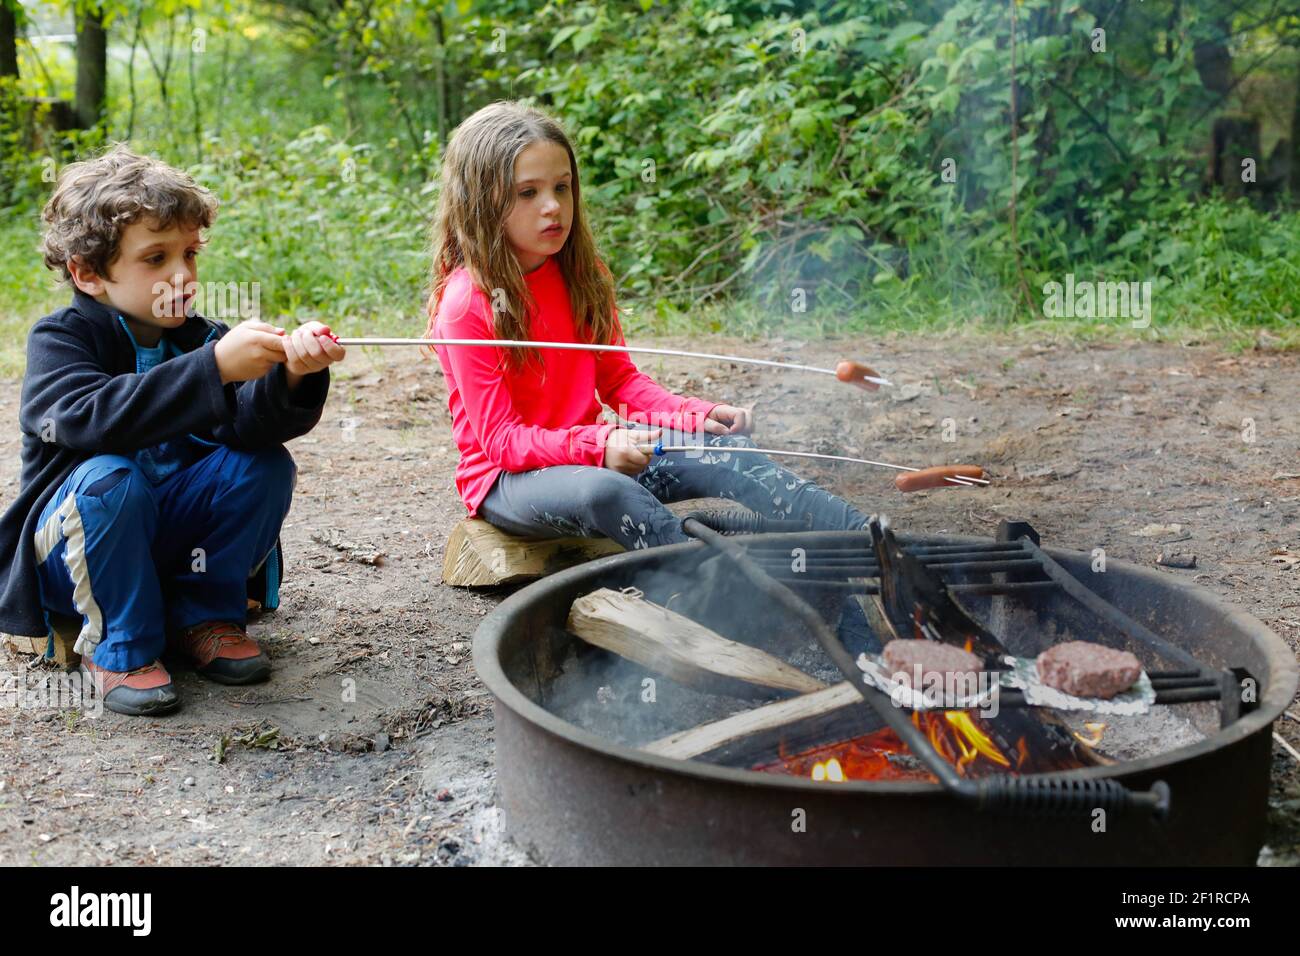 Zwei Kinder, die während des Campens Hot Dogs rösten Stockfoto